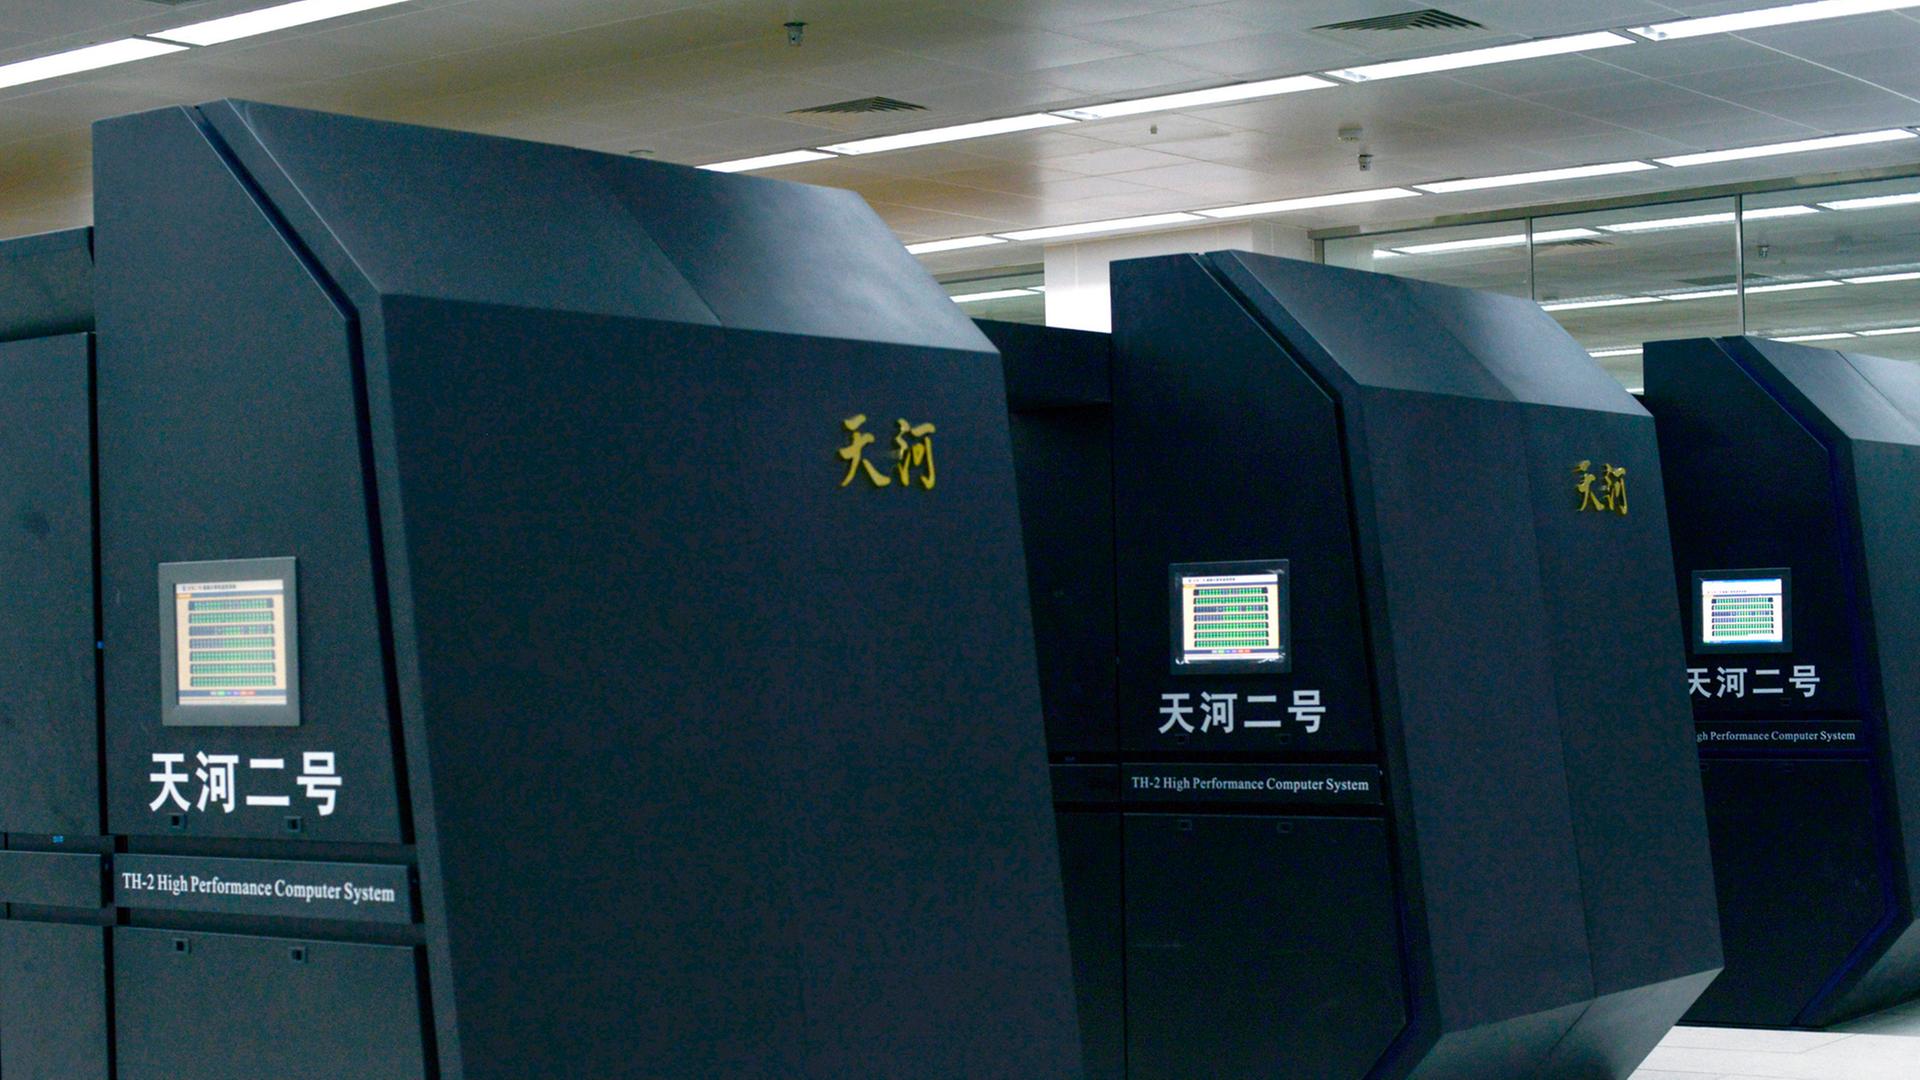 Der chinesische Supercomputer Tianhe-2 steht in einer großen Halle.